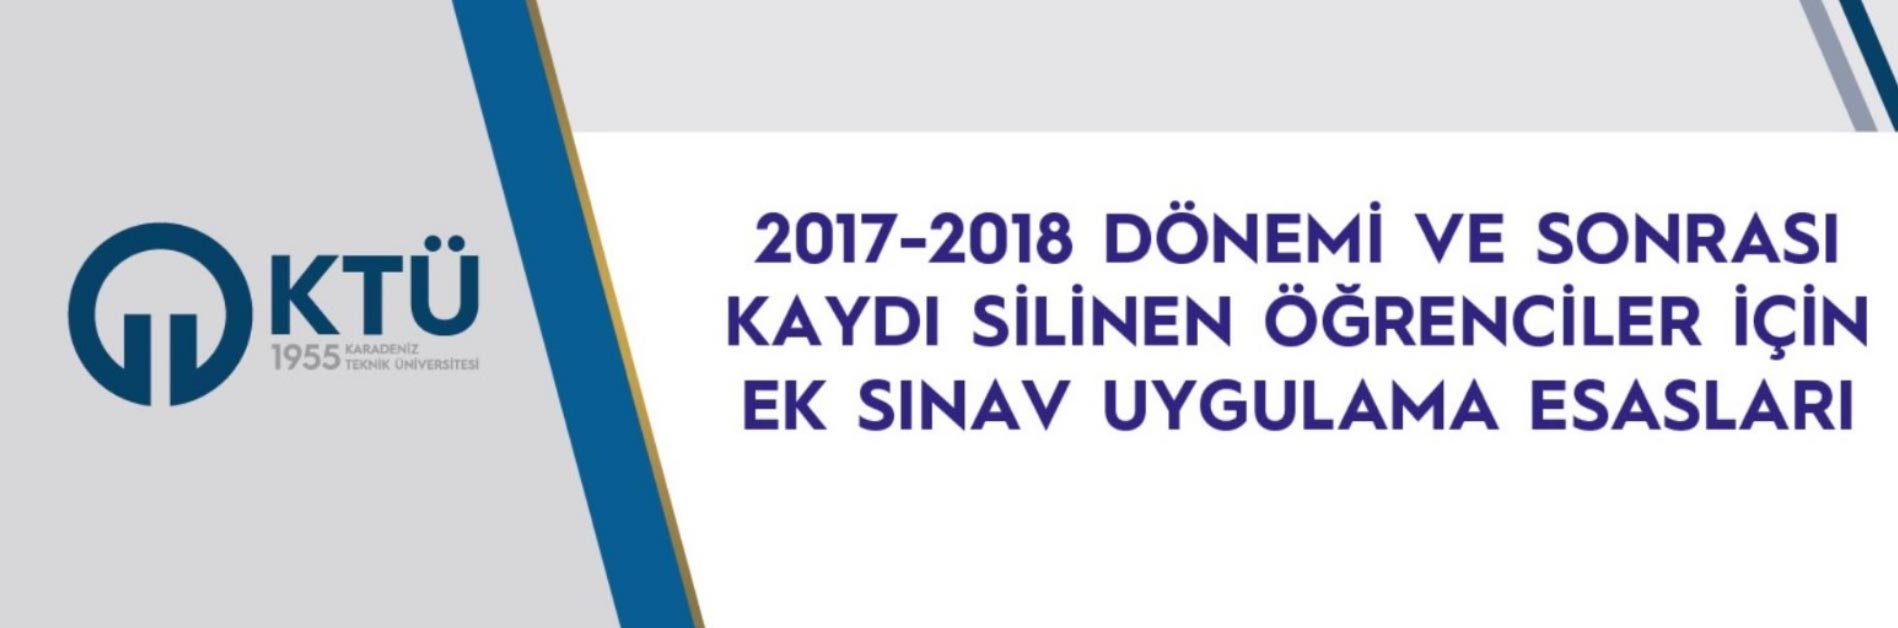 2017-2018 Ek Sınav